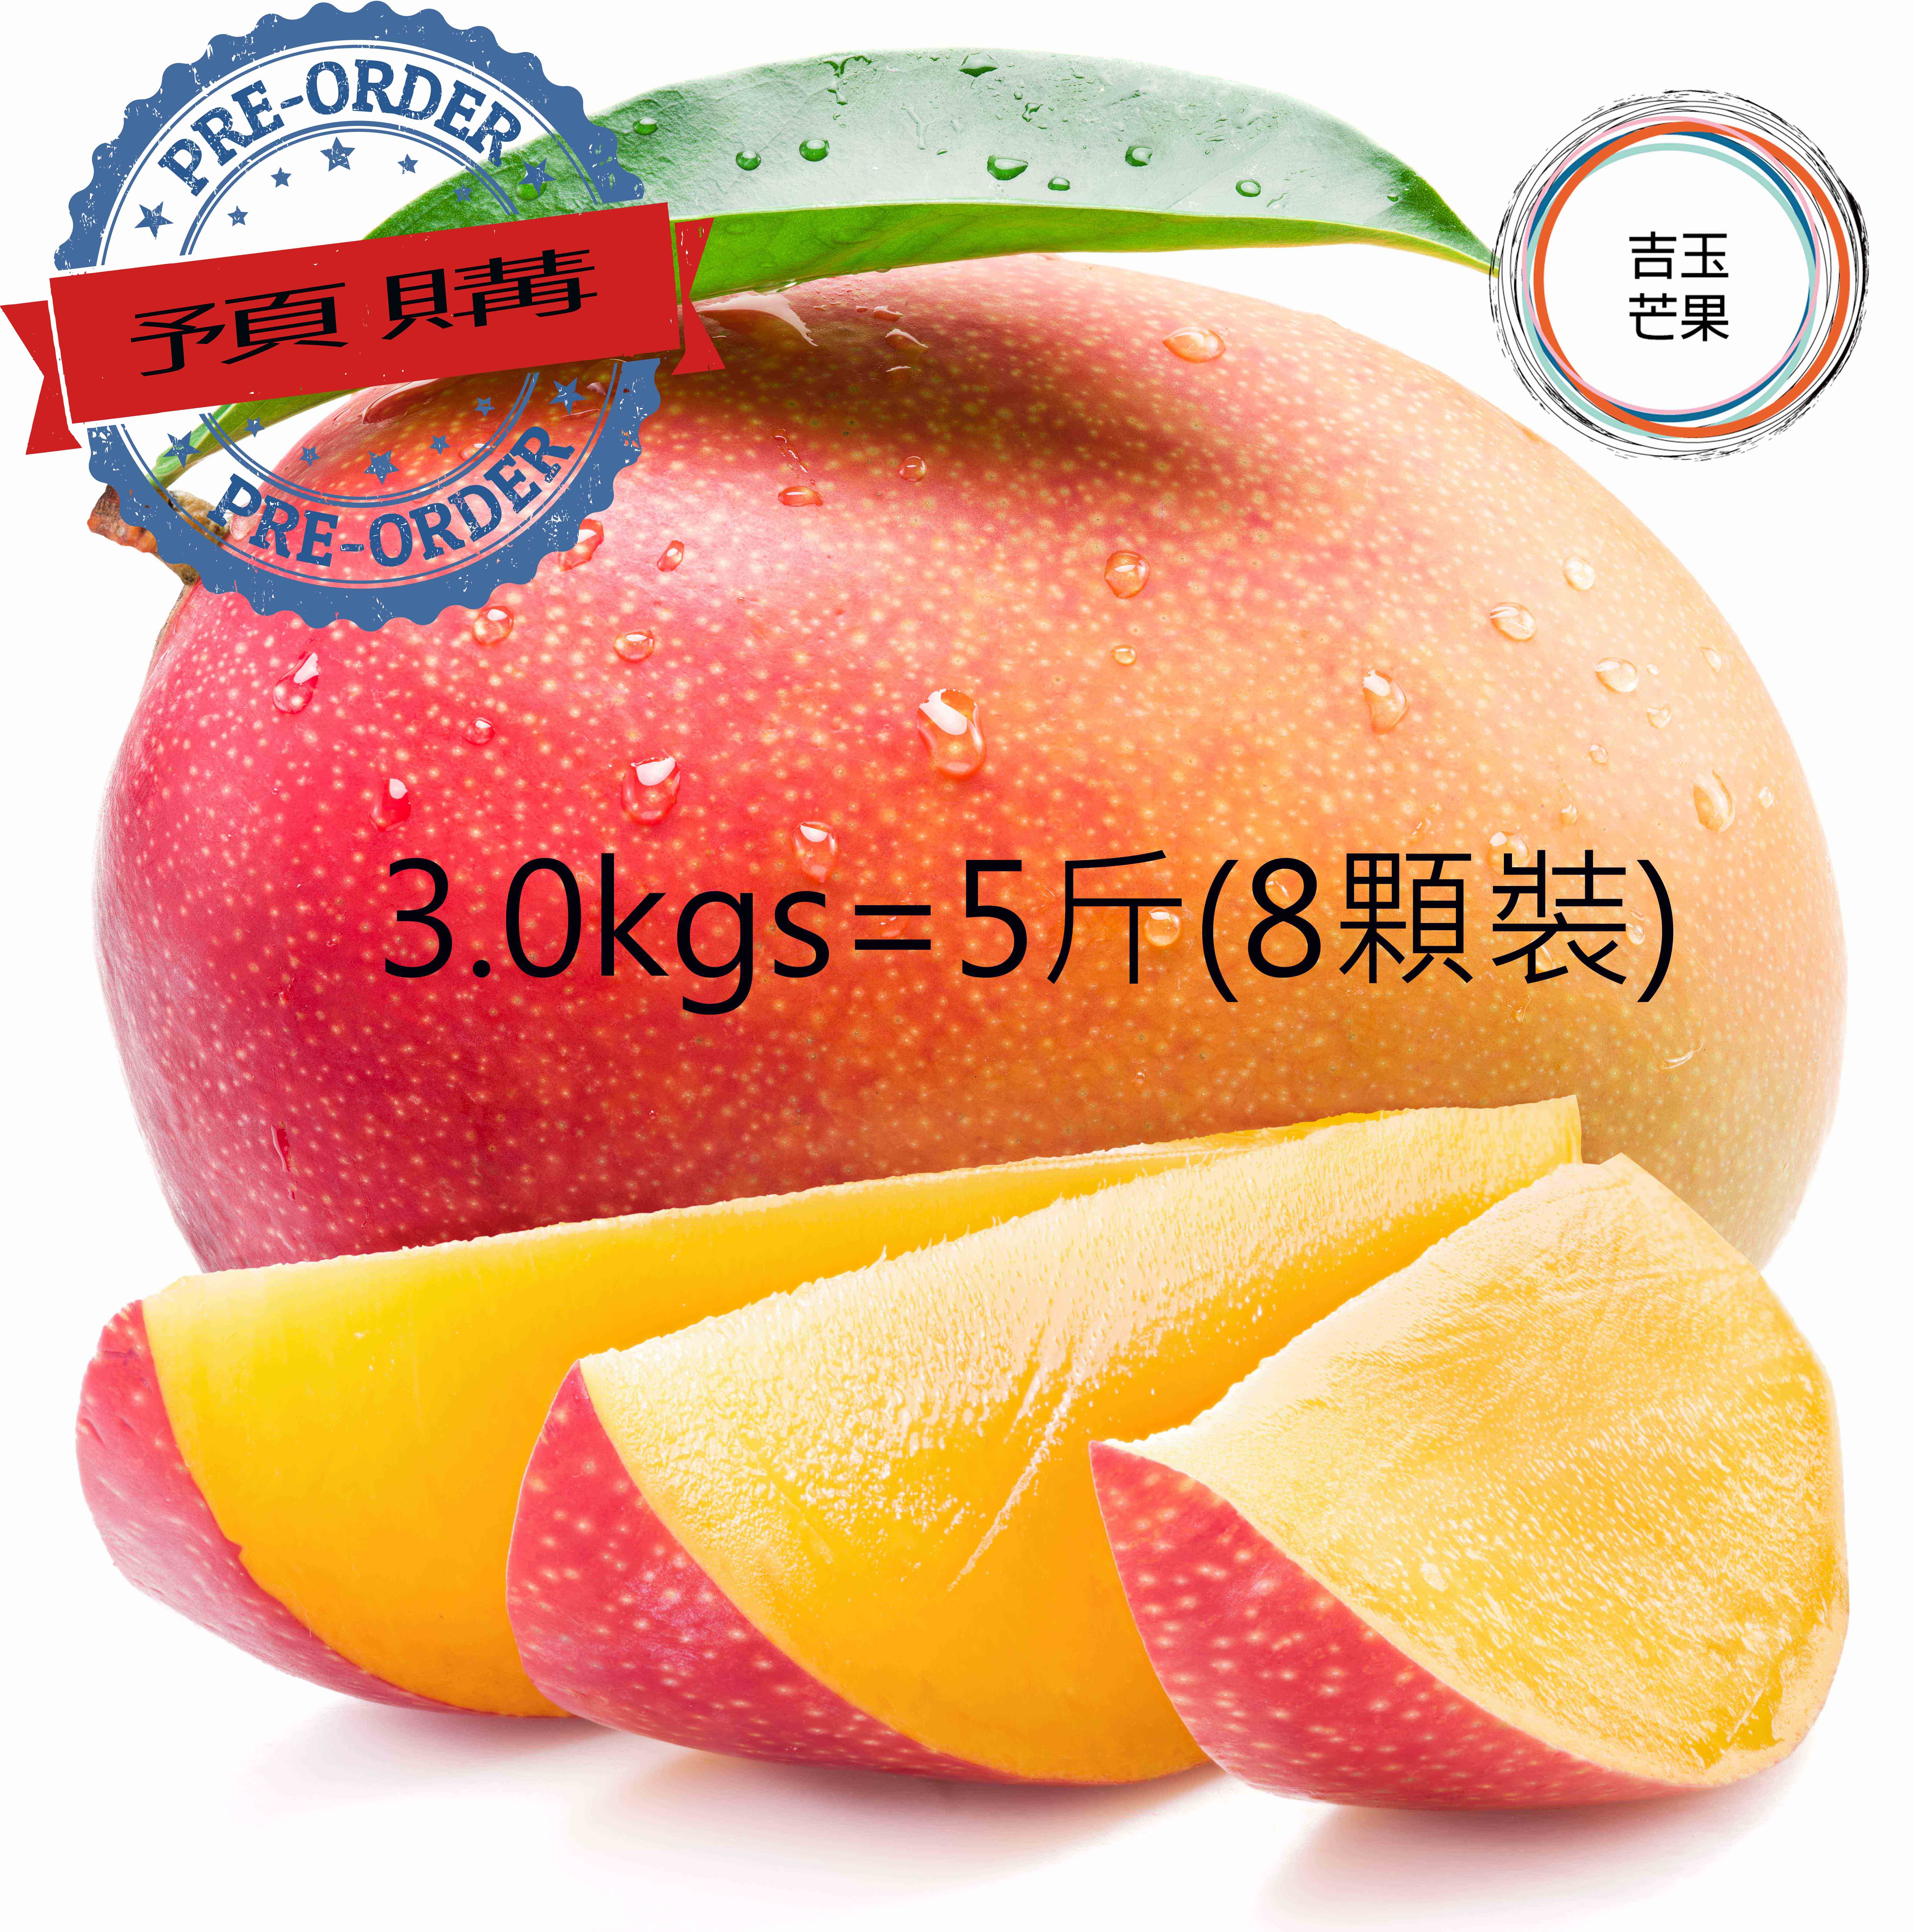 屏東枋山愛文芒果 外銷日本產地 吉園圃認證マンゴー mango [預購免運; ](5斤 / 8 顆裝)